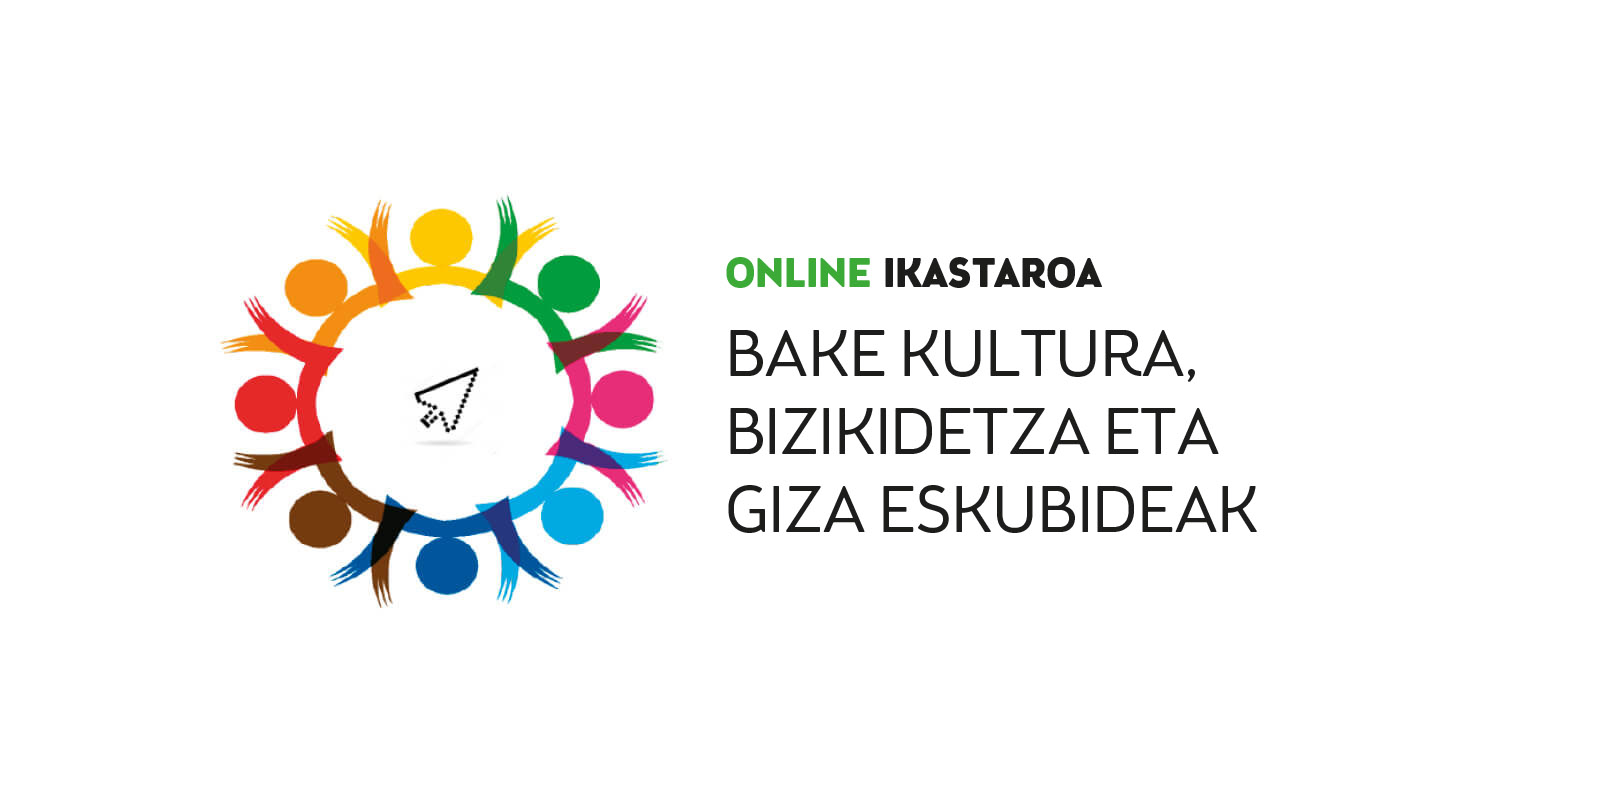 Online ikastaroa: Bake Kultura, Bizikidetza eta Giza Eskubideak